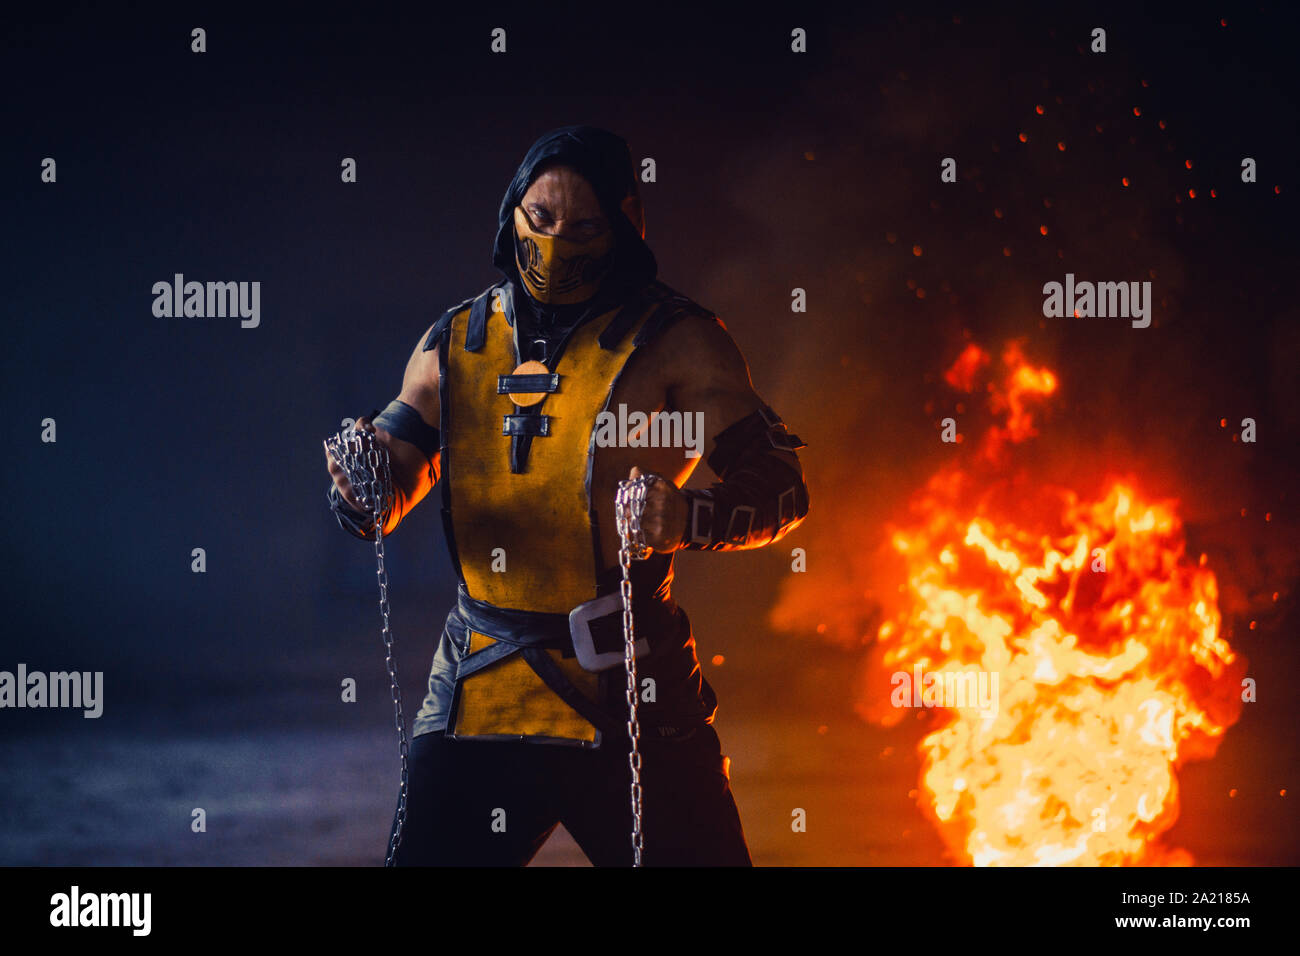 Le portrait de l'homme Scorpion guerrier avec des chaînes dans ses mains  pose à l'arrière-plan d'incendie et de fumée Photo Stock - Alamy